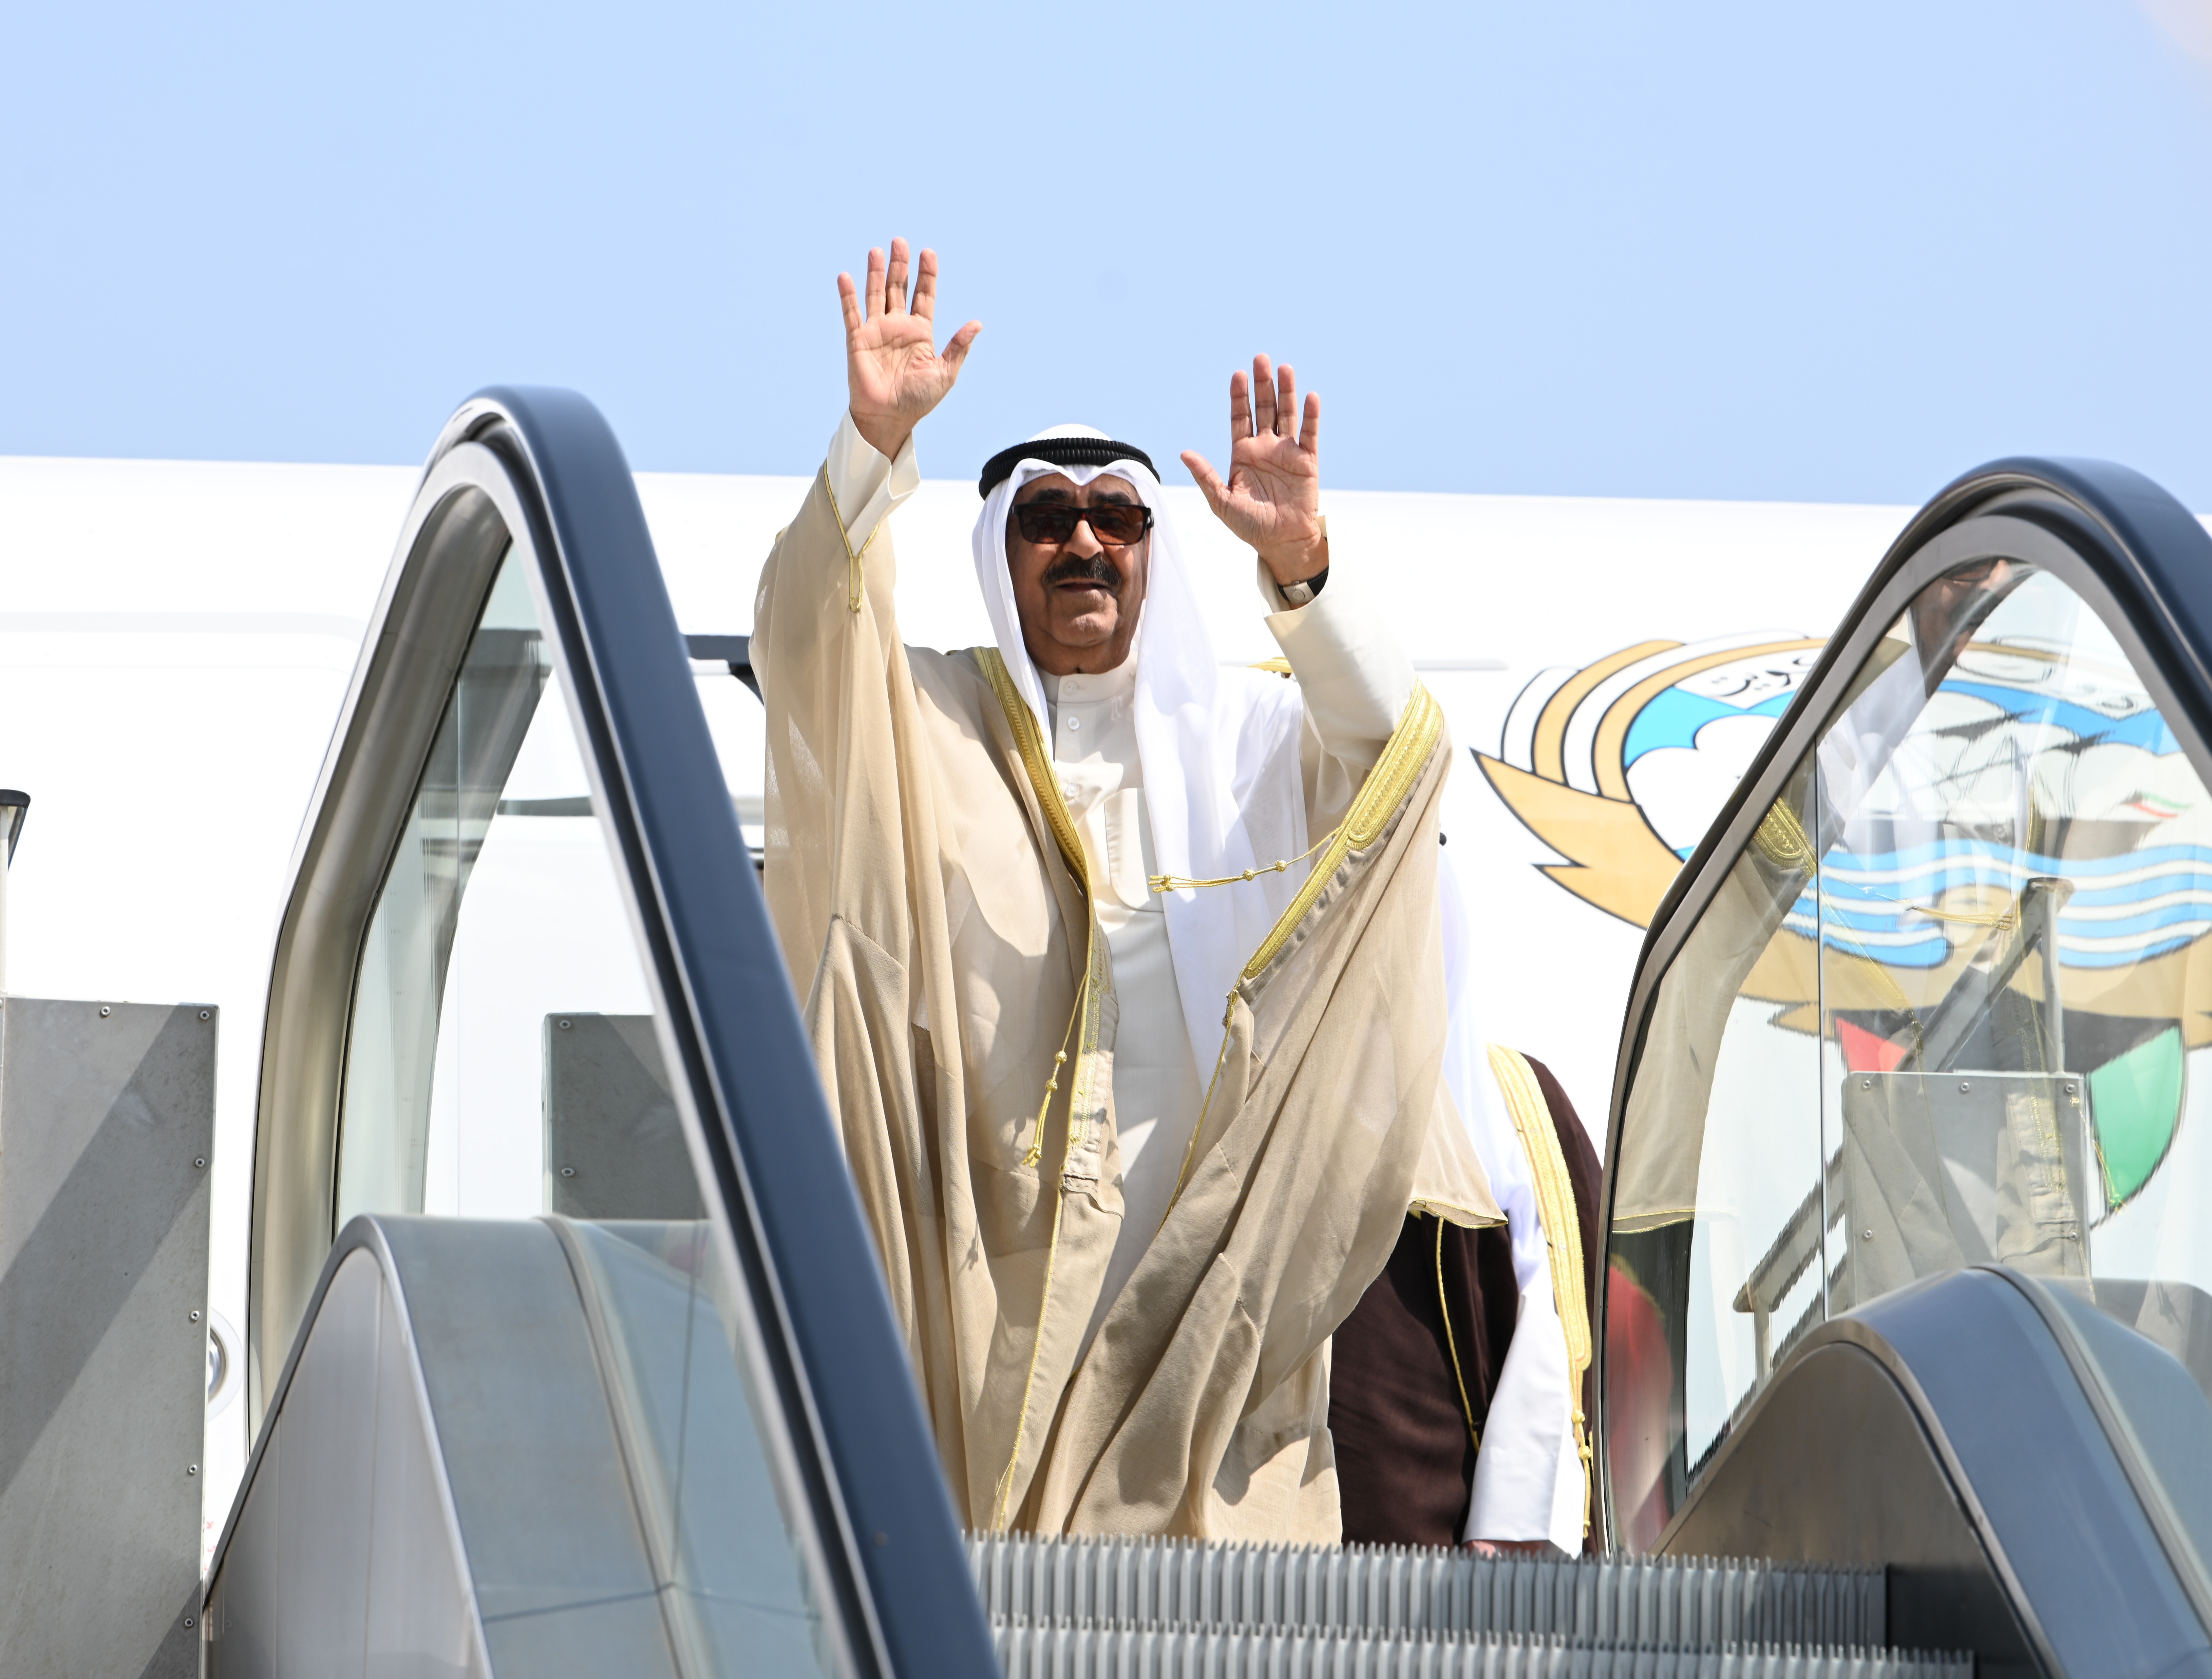 Kuwait Amir Sheikh Mishal Al-Ahmad Al-Jaber Al-Sabah departs Egypt after state visit.